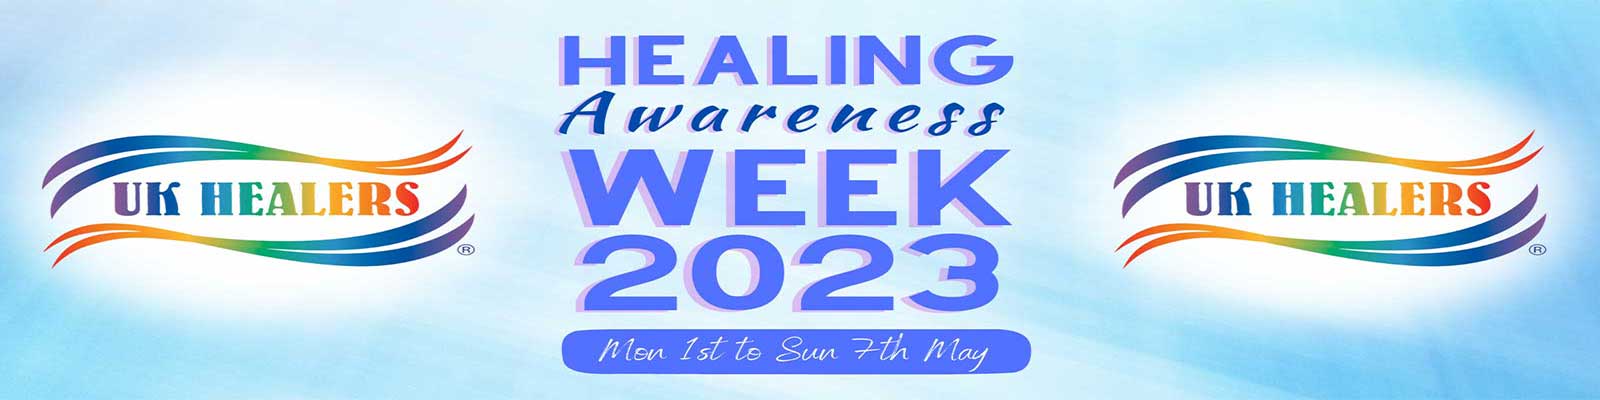 Healing Awareness Week 2023